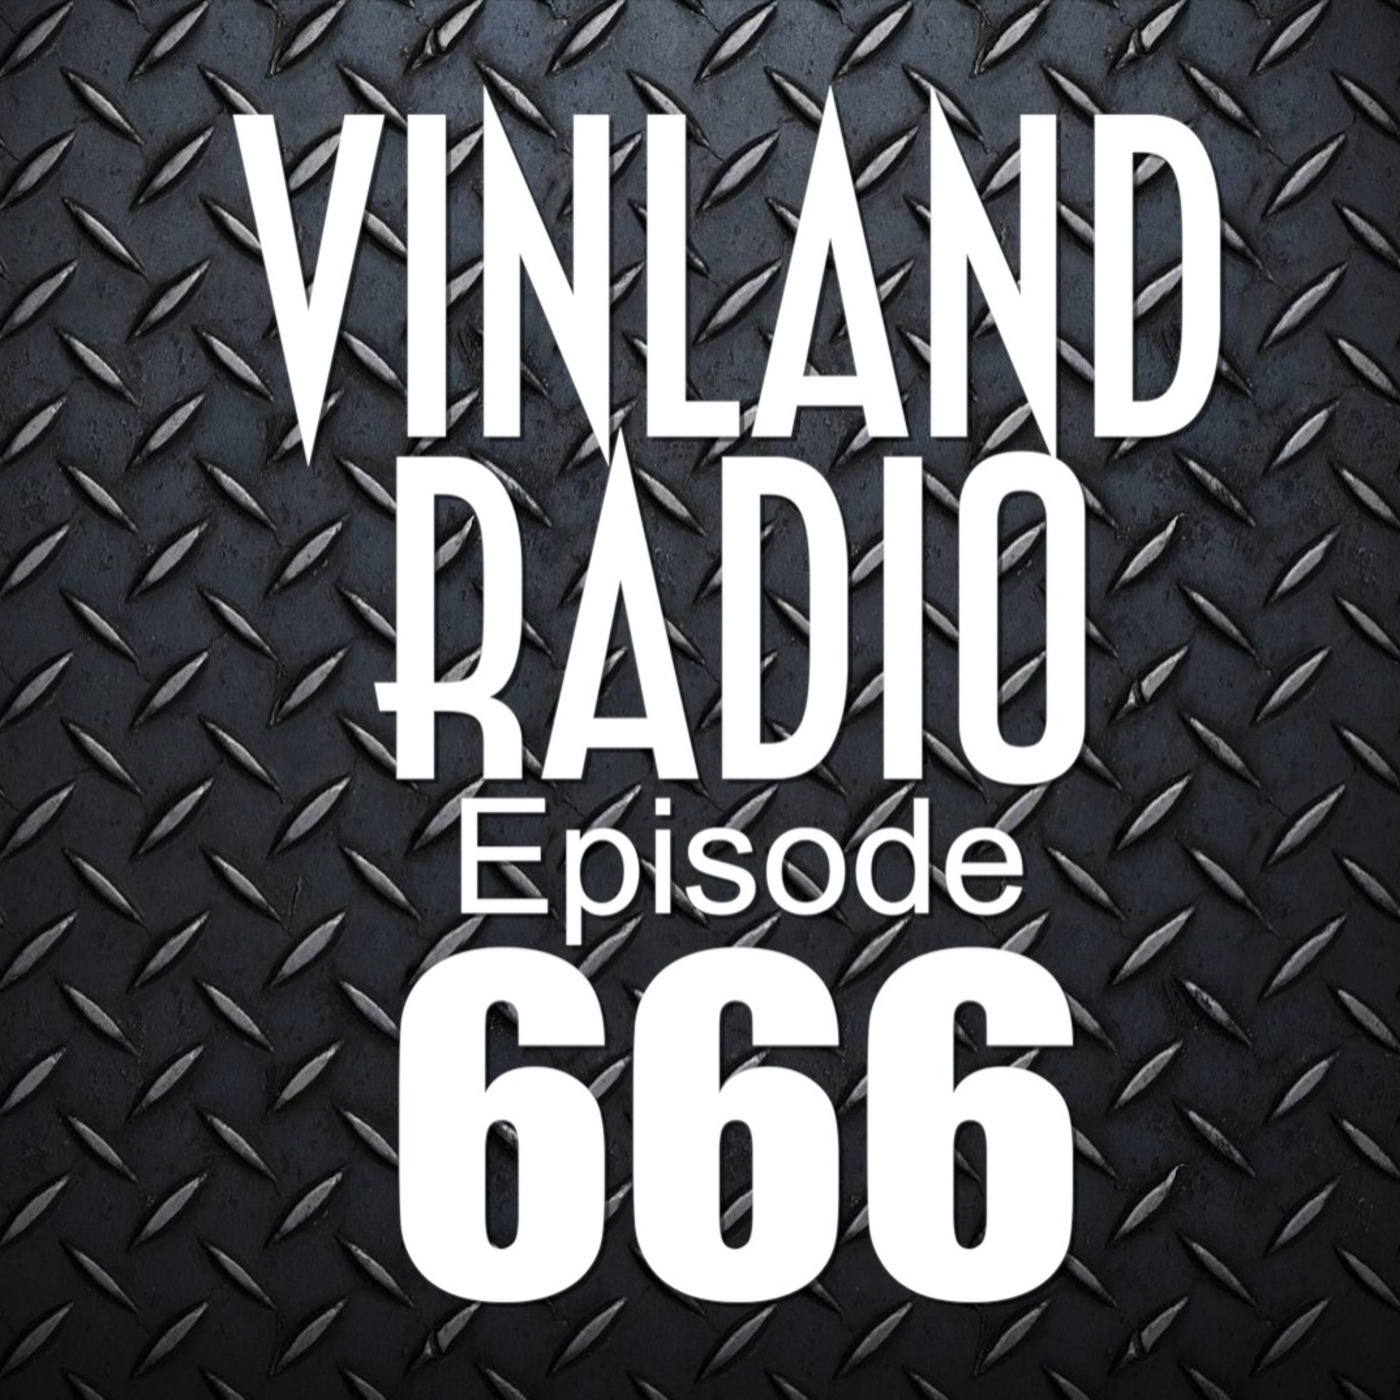 Episode 20: Vinland Radio - Episode 666